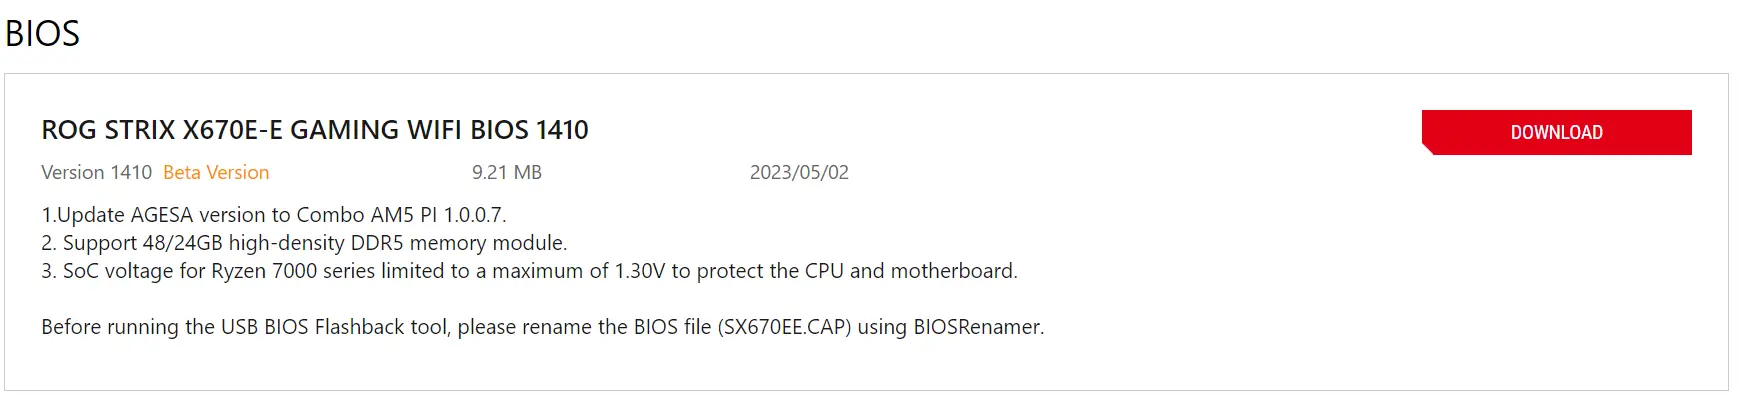 Página BIOS de Asus para la placa base X670E